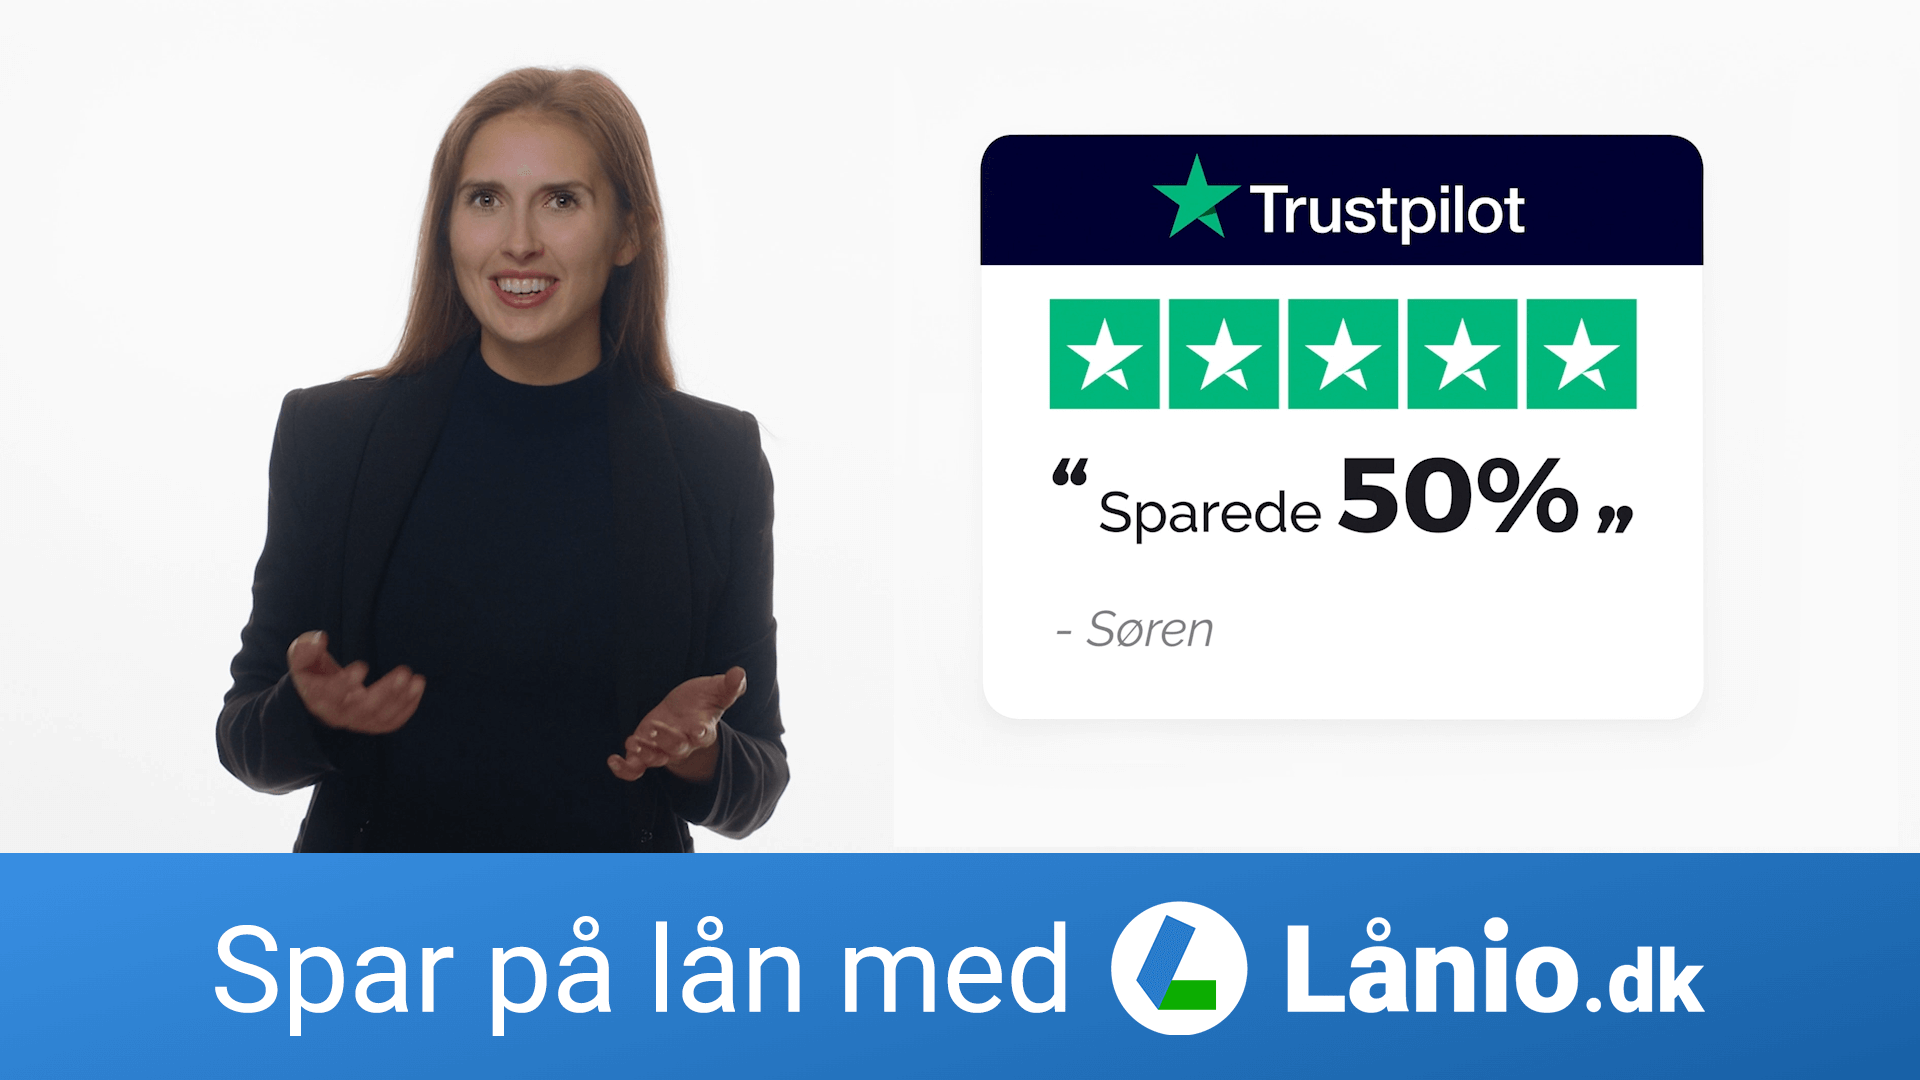 LÅN PENGE HOS LÅNIO.DK ⭐ Sammenlign Og Spar på både Nye og Eksisterende Lån | Lånio.dk